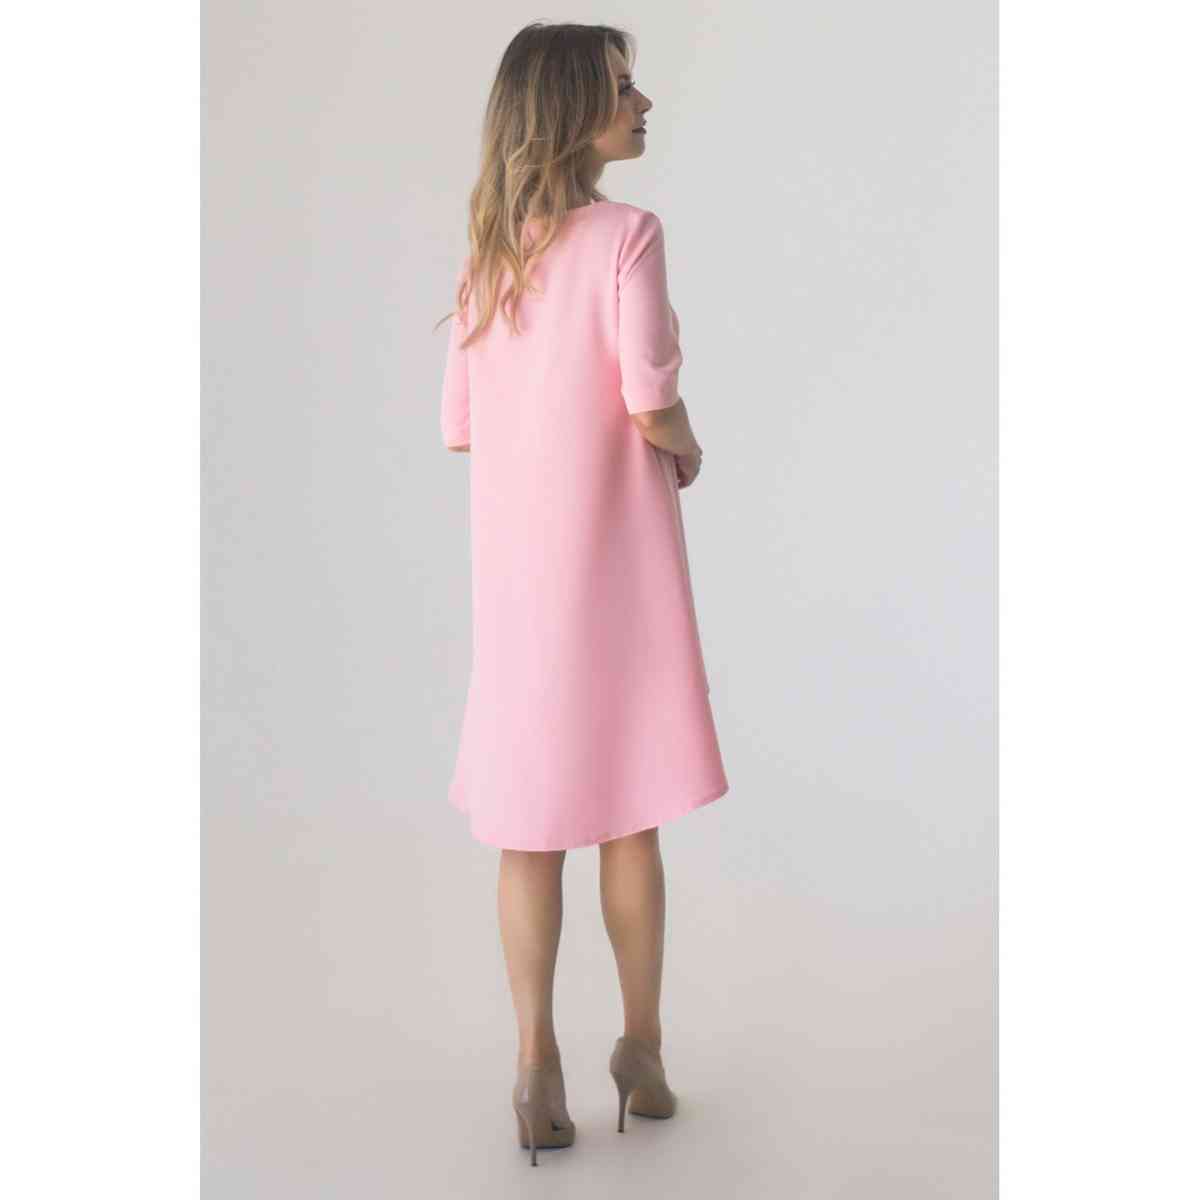 Розовое платье Ассиметрия